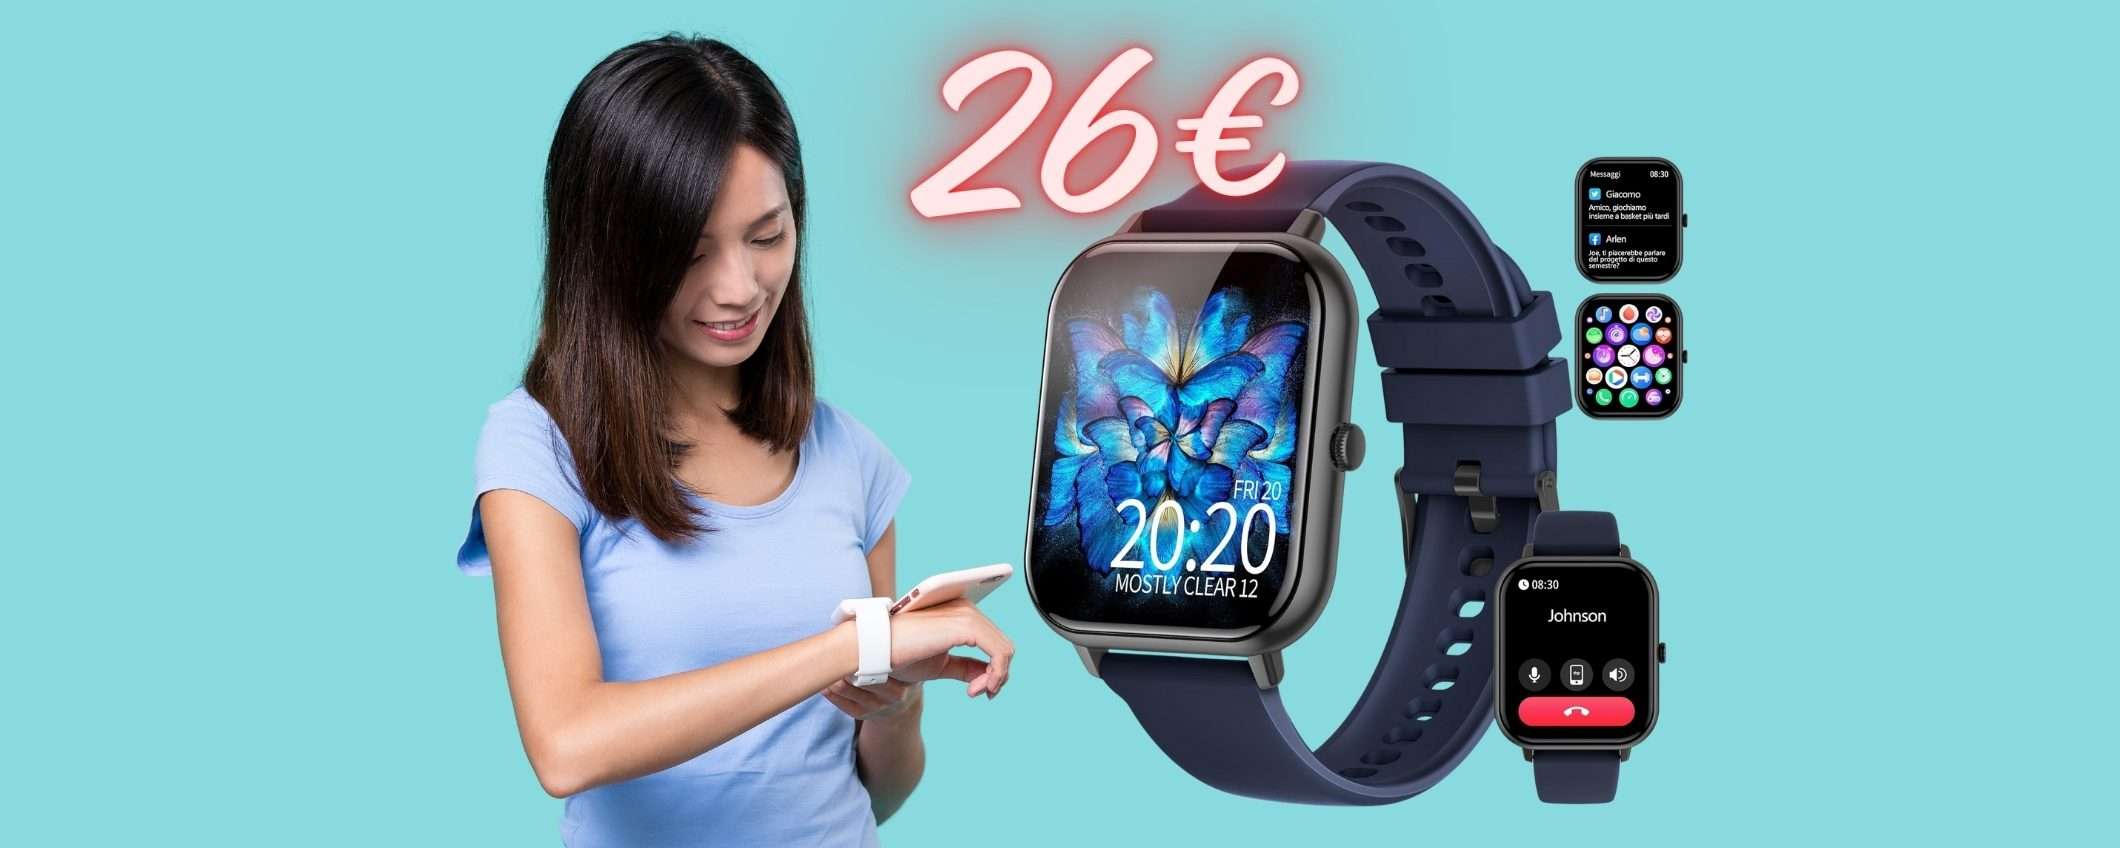 Smartwatch PAZZESCO a PREZZO ASSURDO, solo su Amazon tuo a 26€